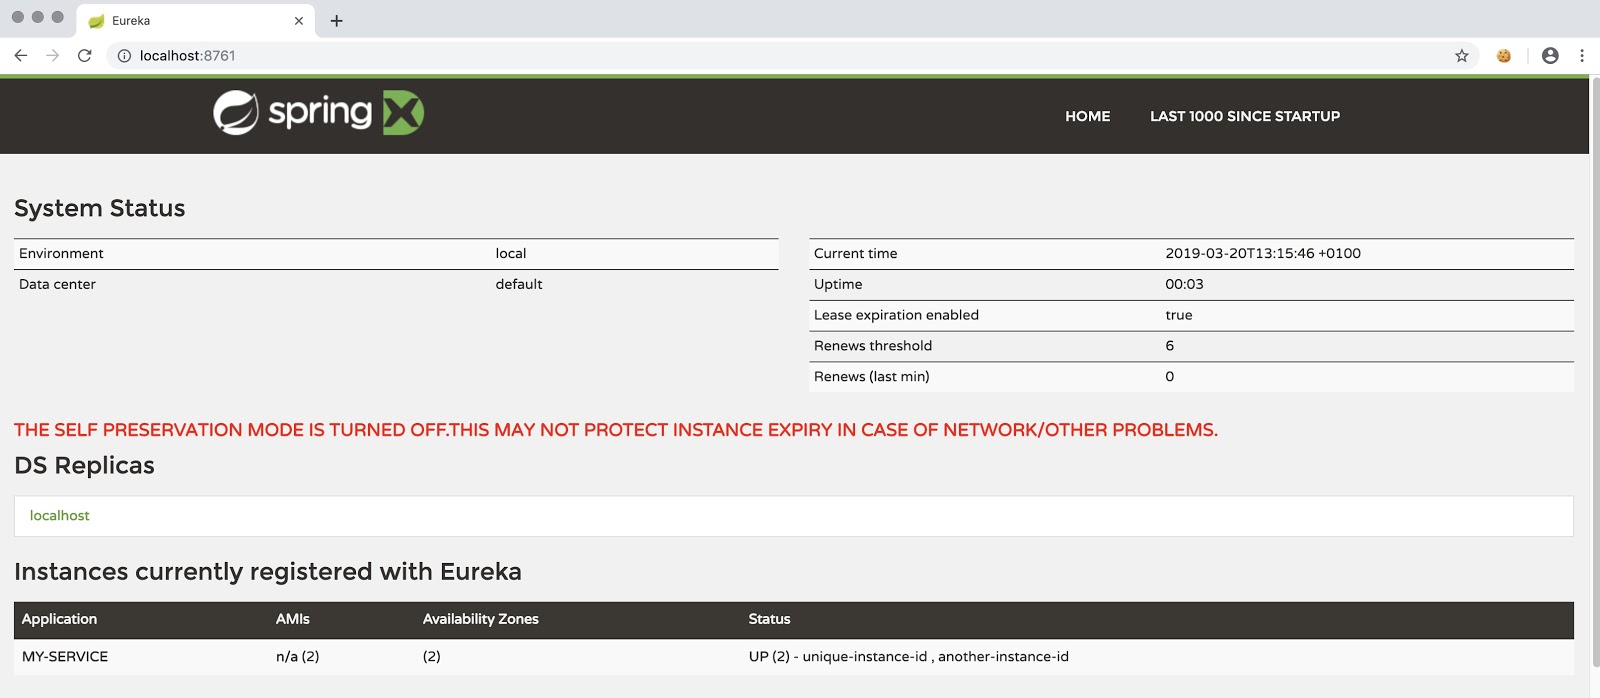 Instances registered with Eureka